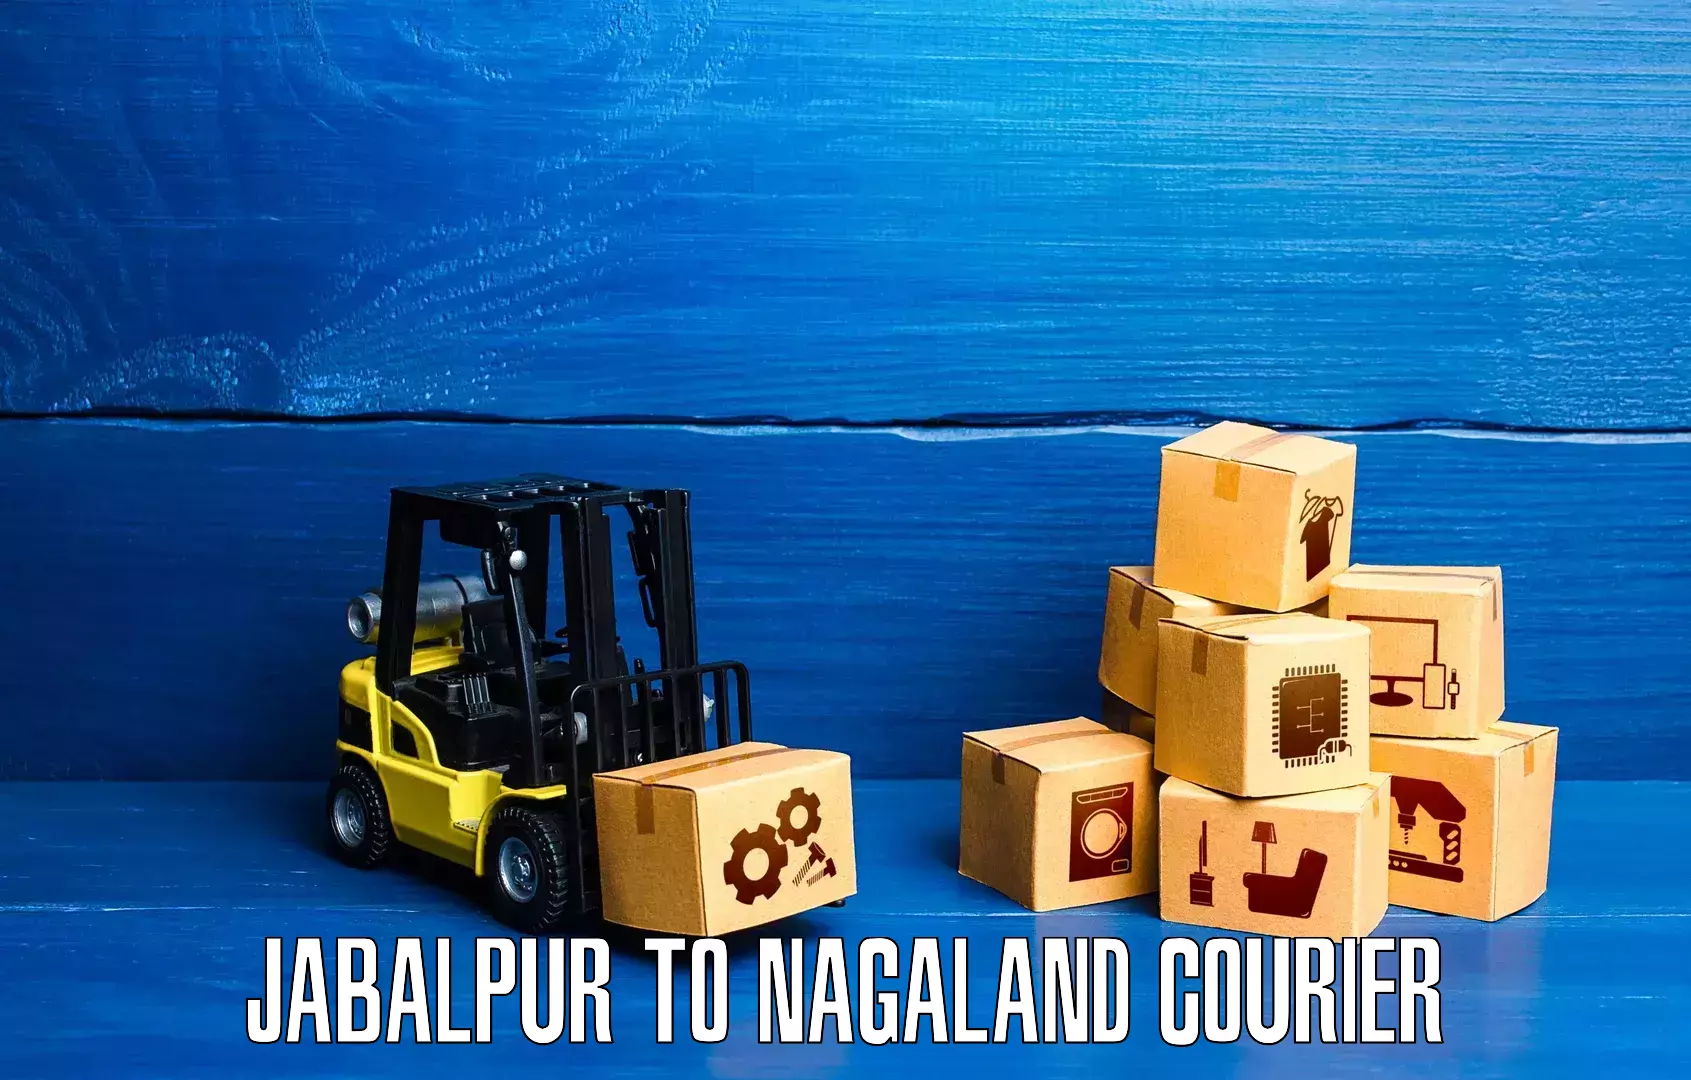 Tracking updates Jabalpur to Nagaland